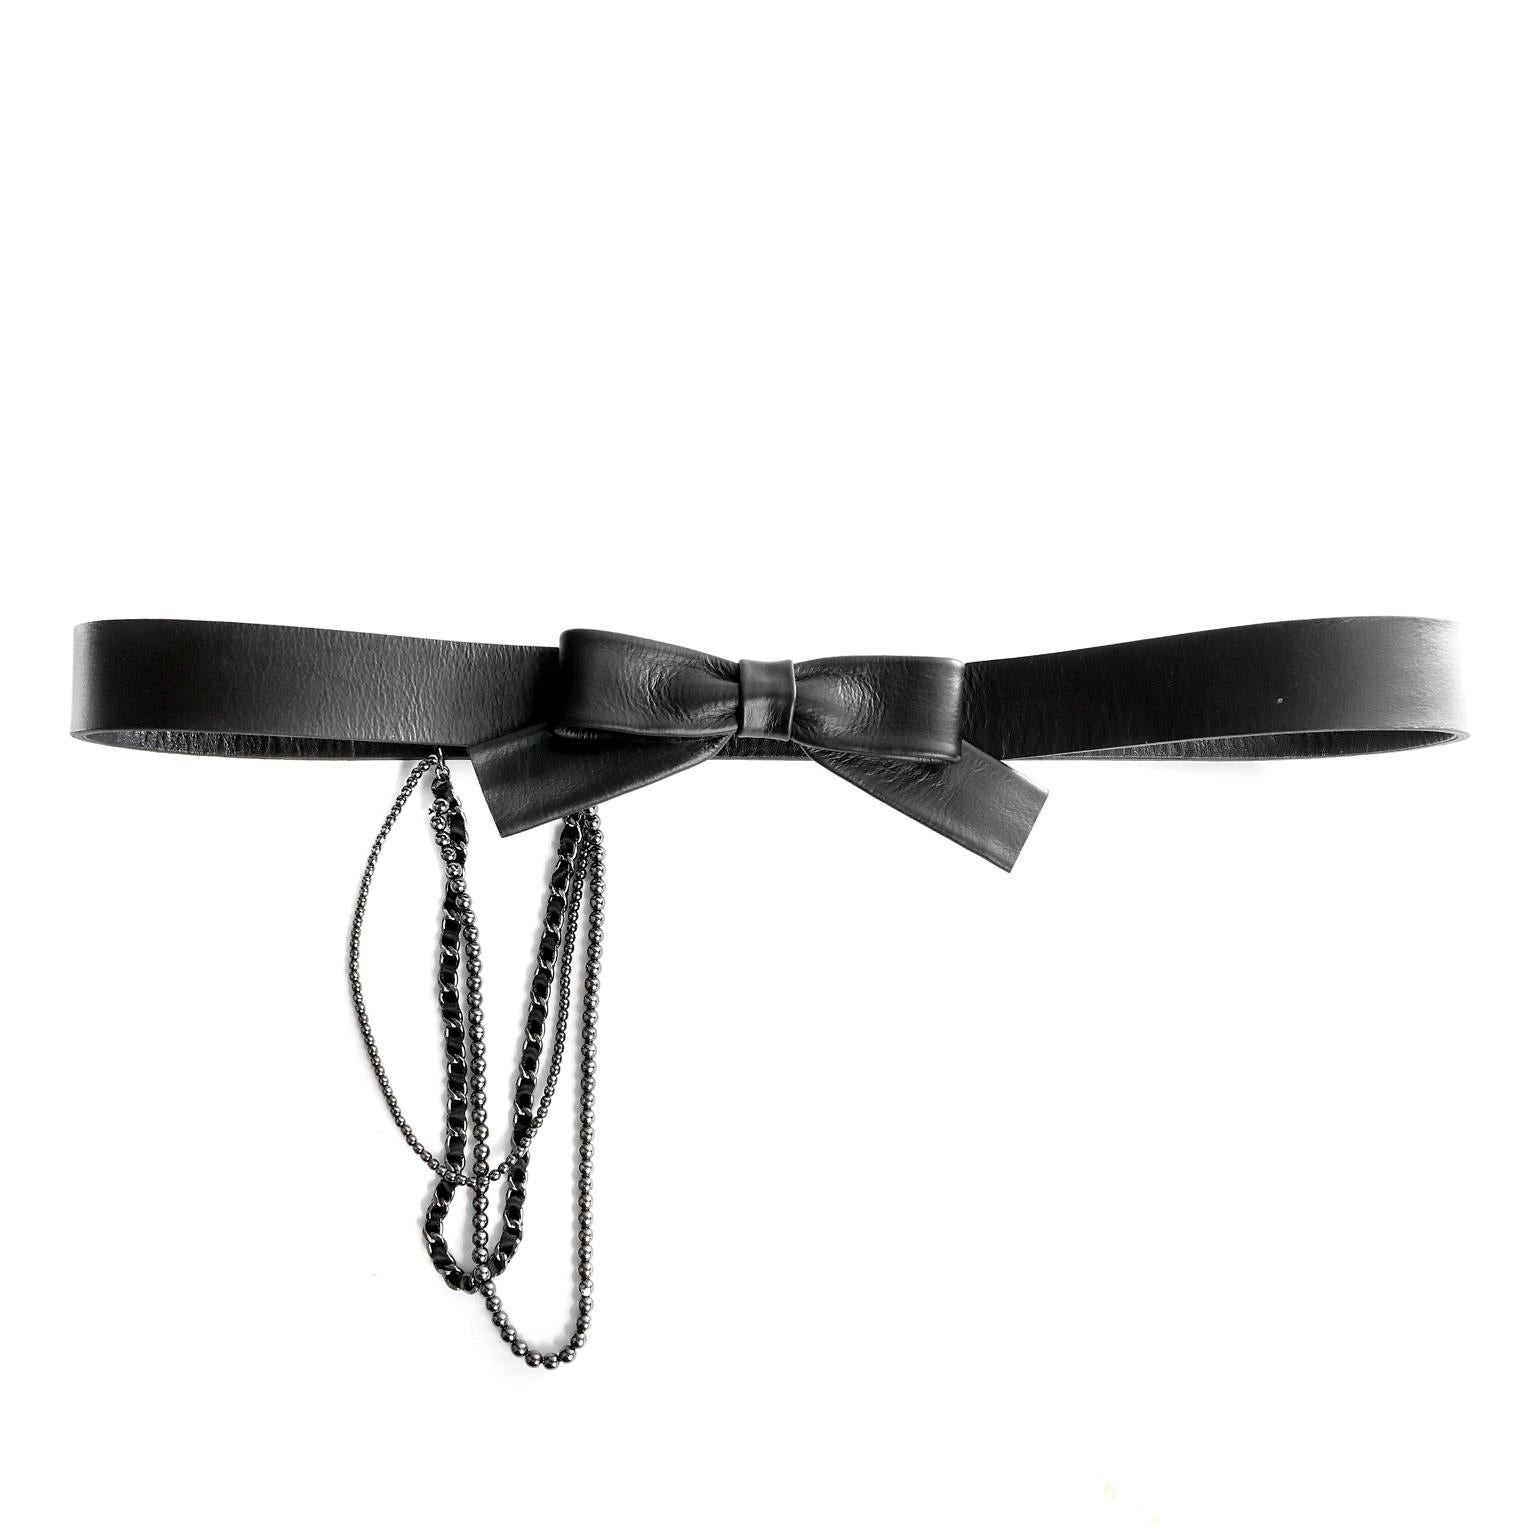 Diese authentische Chanel Black Bow Belt ist in neuwertigem Zustand.  Der Gürtel aus schwarzem Leder ist mit schwarzem Wollstoff überzogen und hat einen zentralen Schleifenverschluss.  Drei verschiedenartige Ketten baumeln dekorativ von der Seite. 